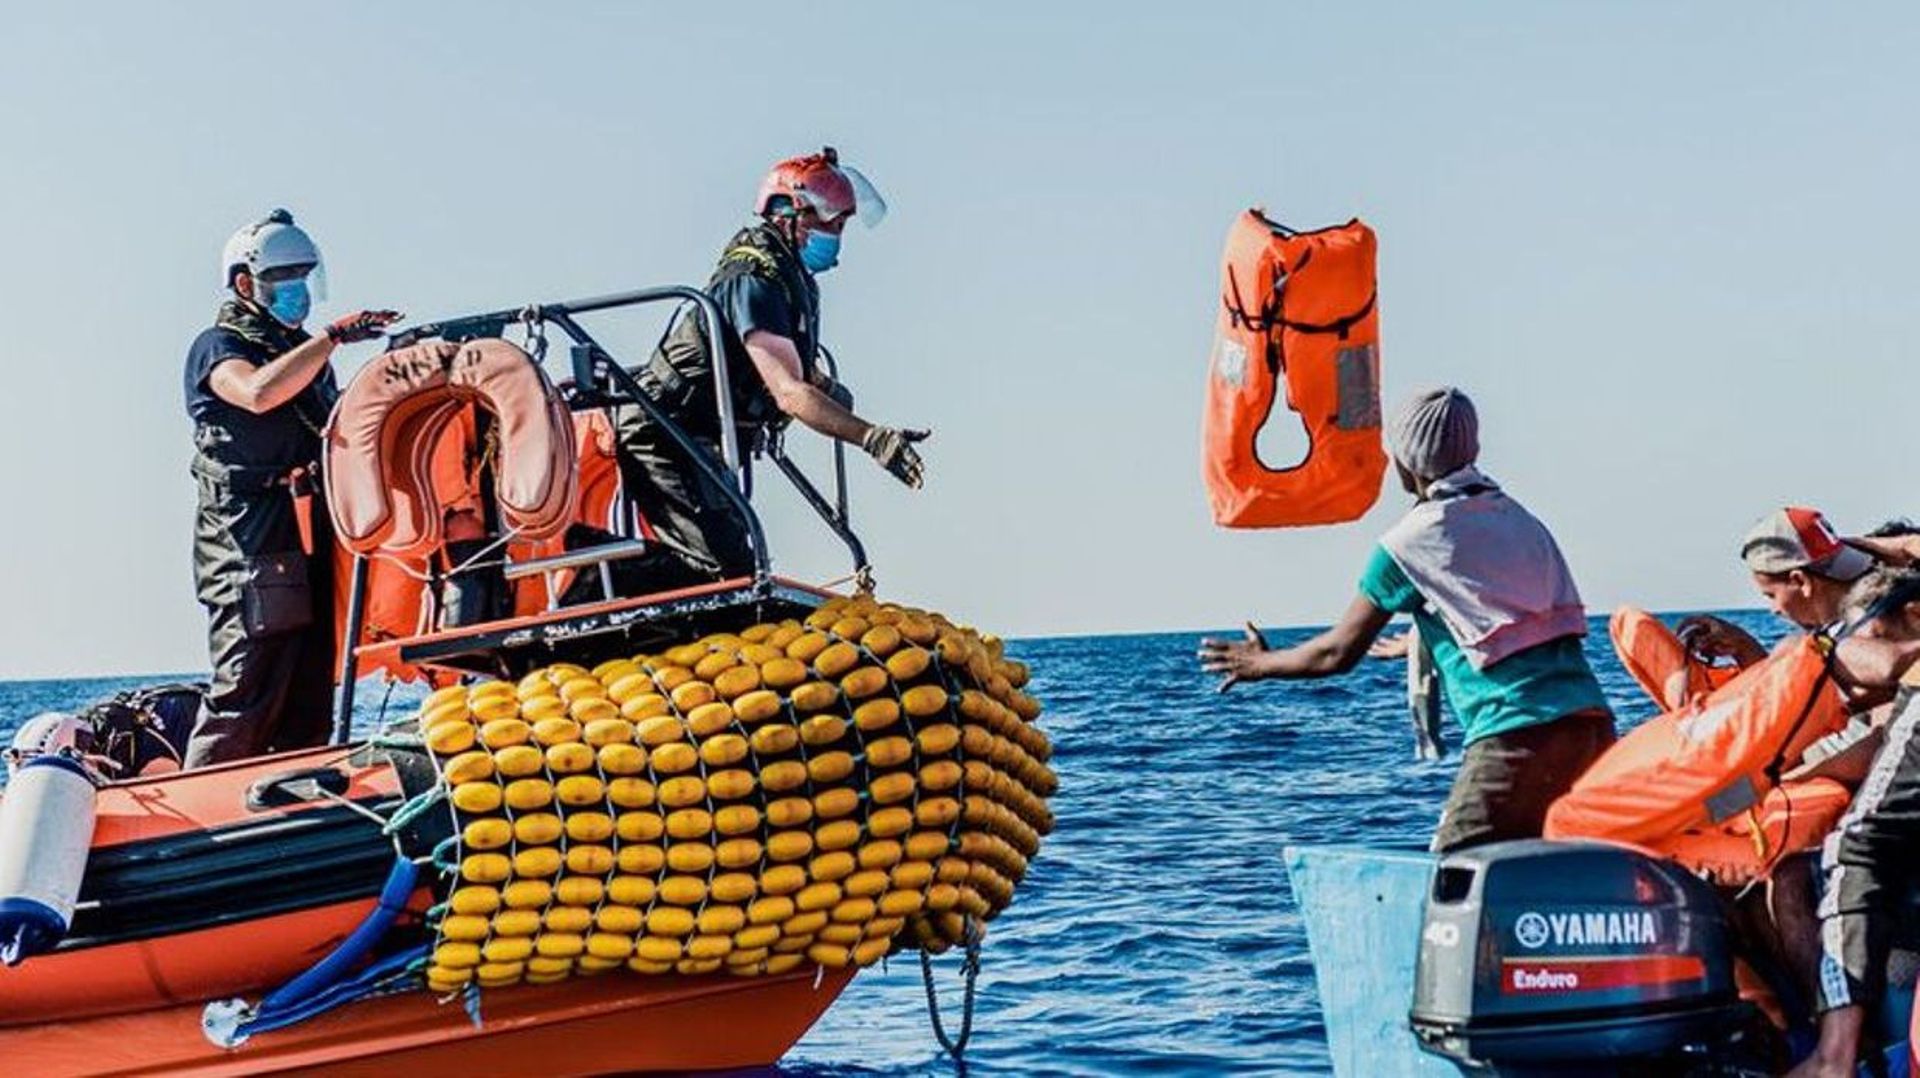 Méditerranée: un bateau fait naufrage au large de la Libye avec 130 migrants à bord